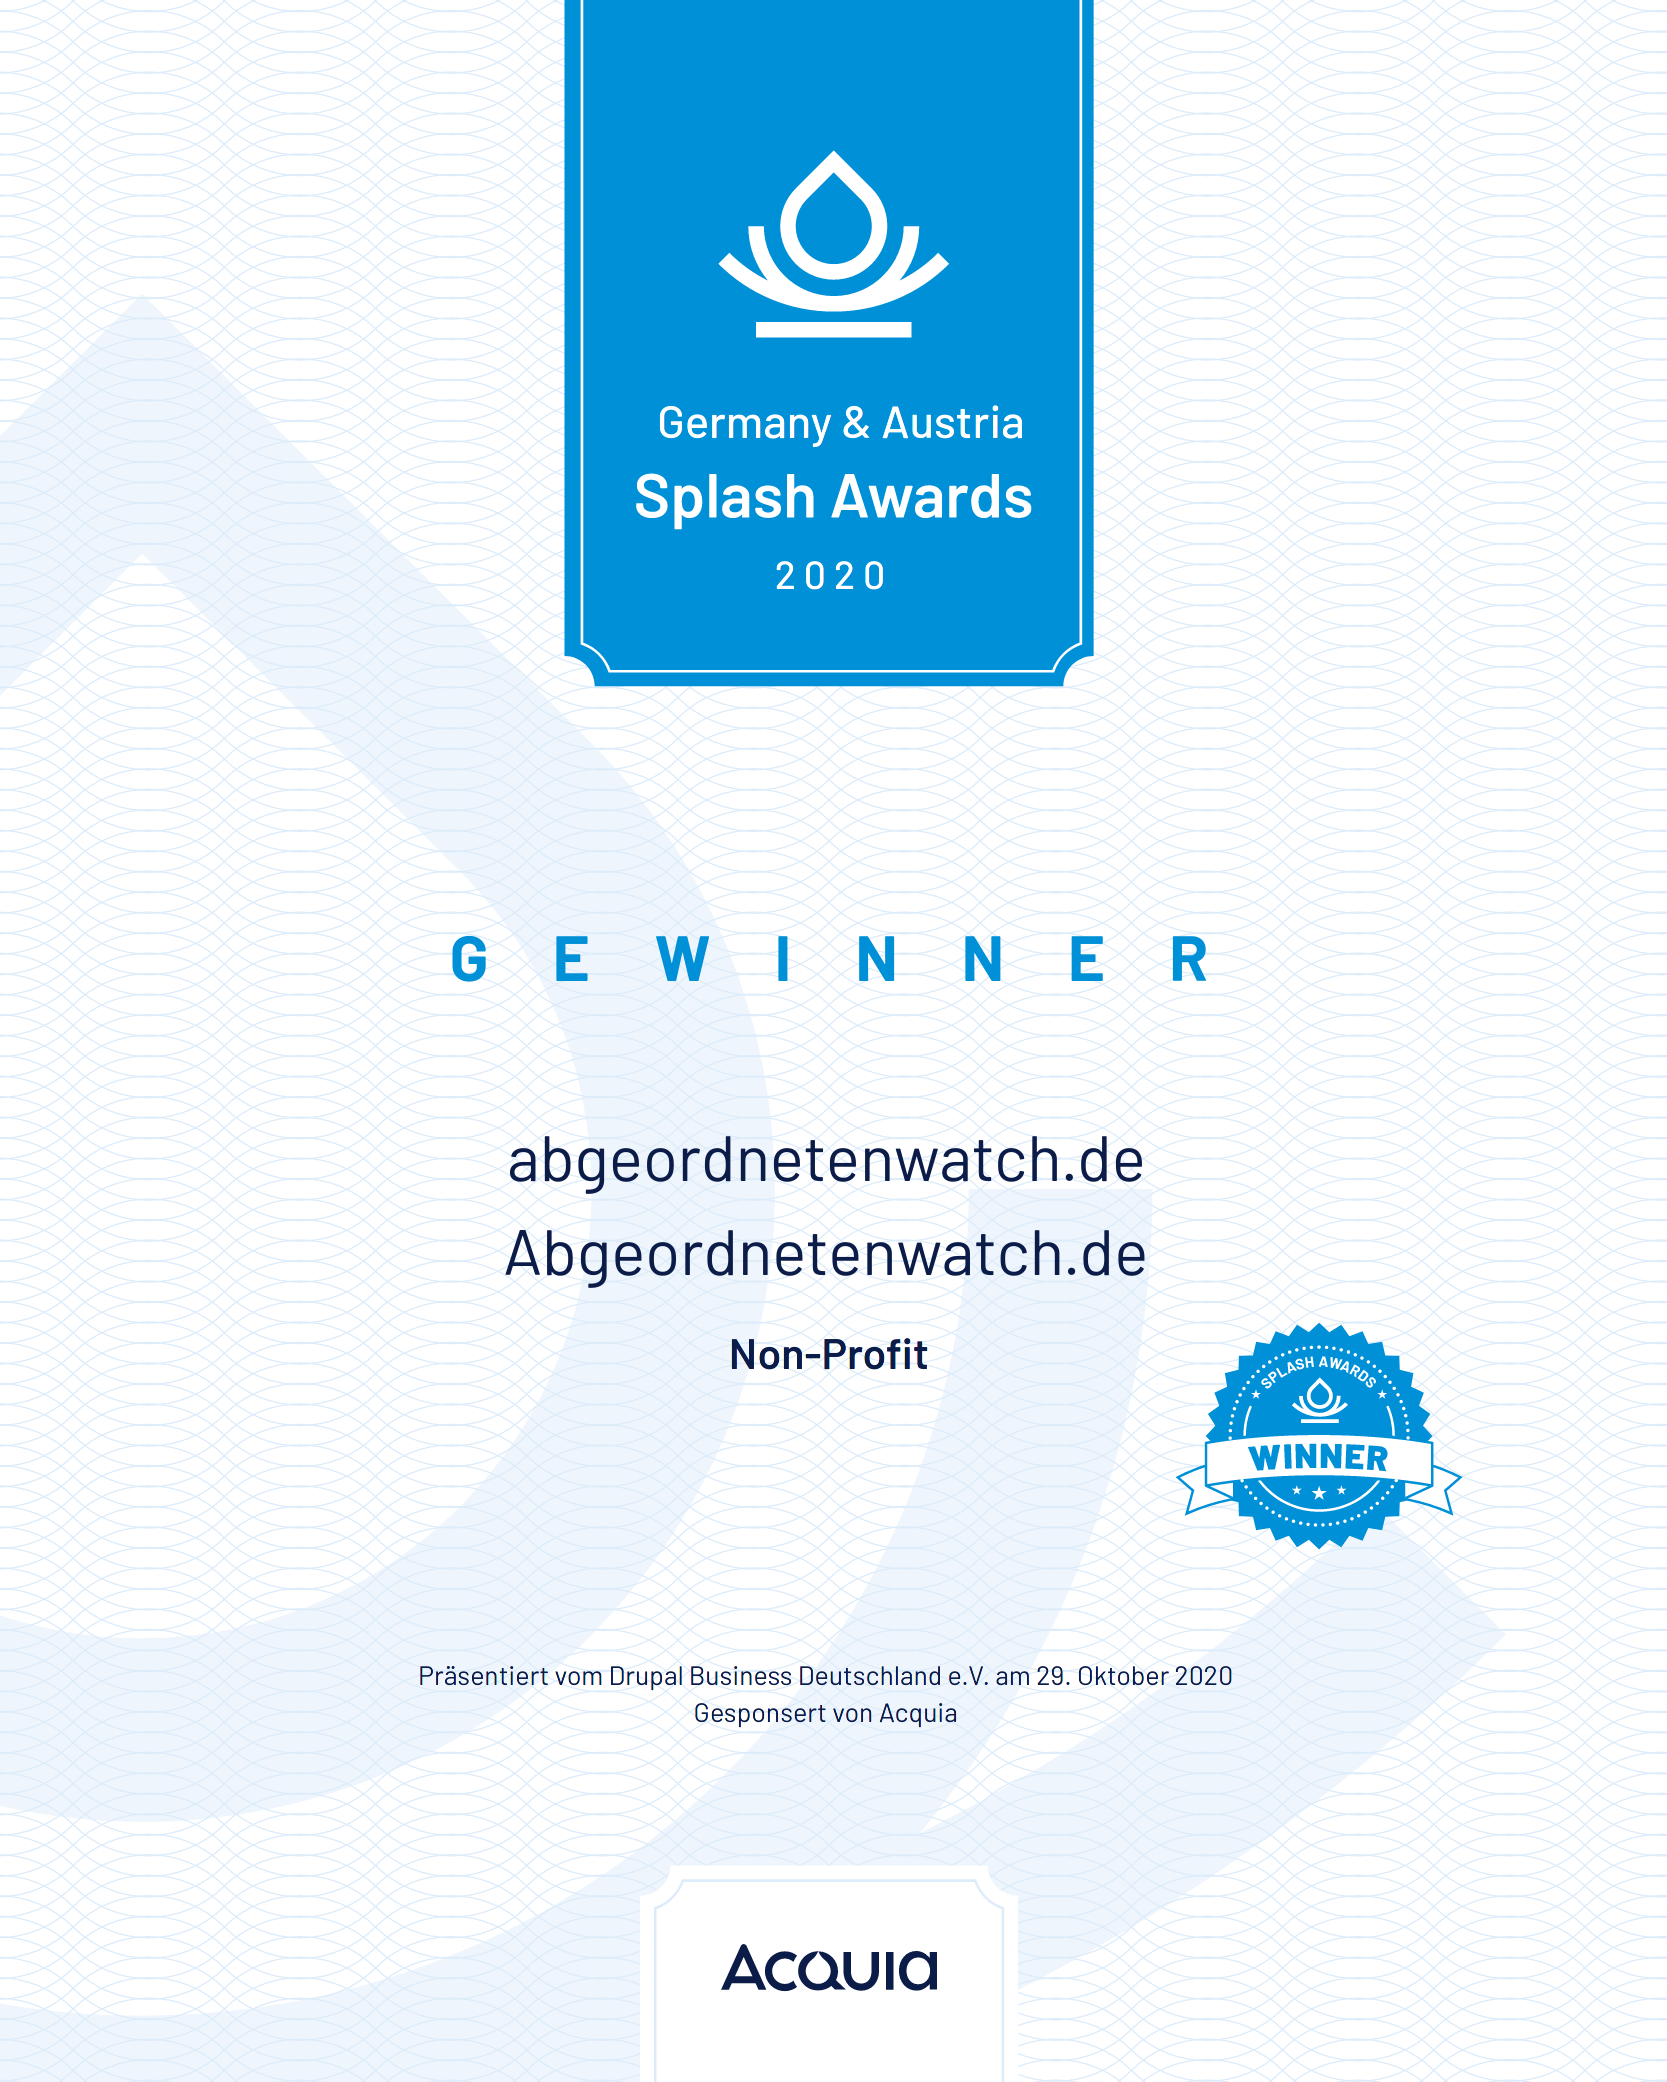 Splash awards certificate